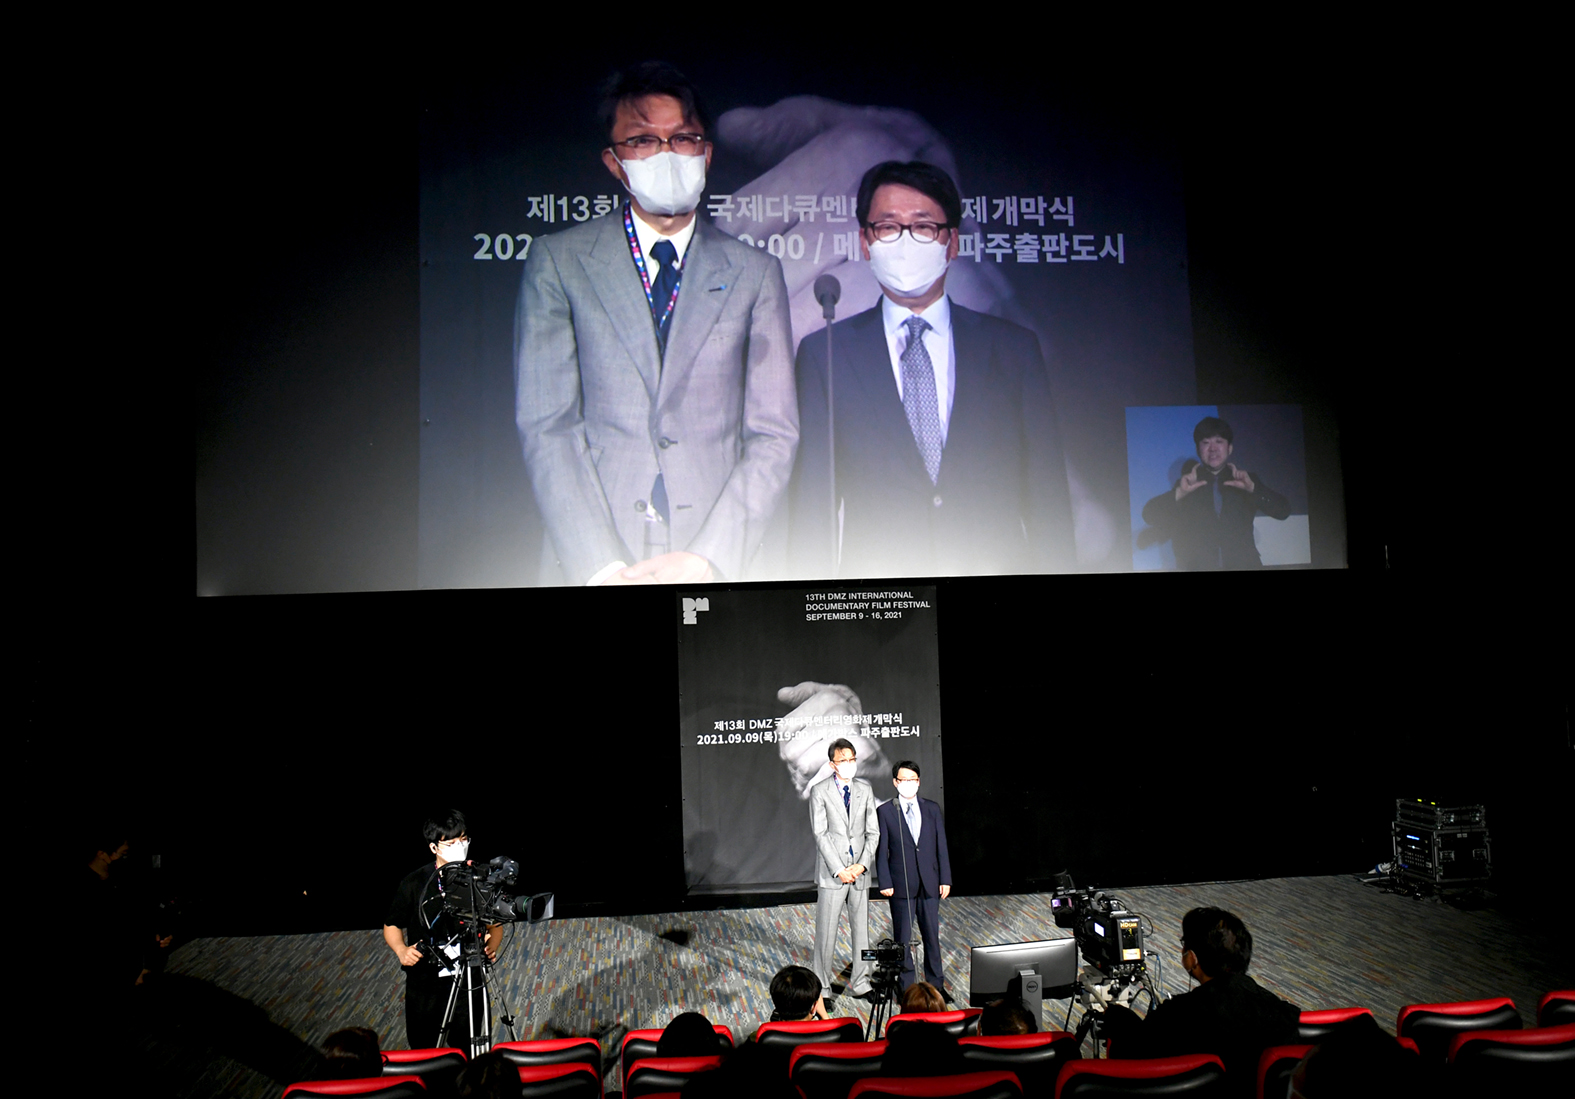 제13회 DMZ국제다큐멘터리영화제 개막식 